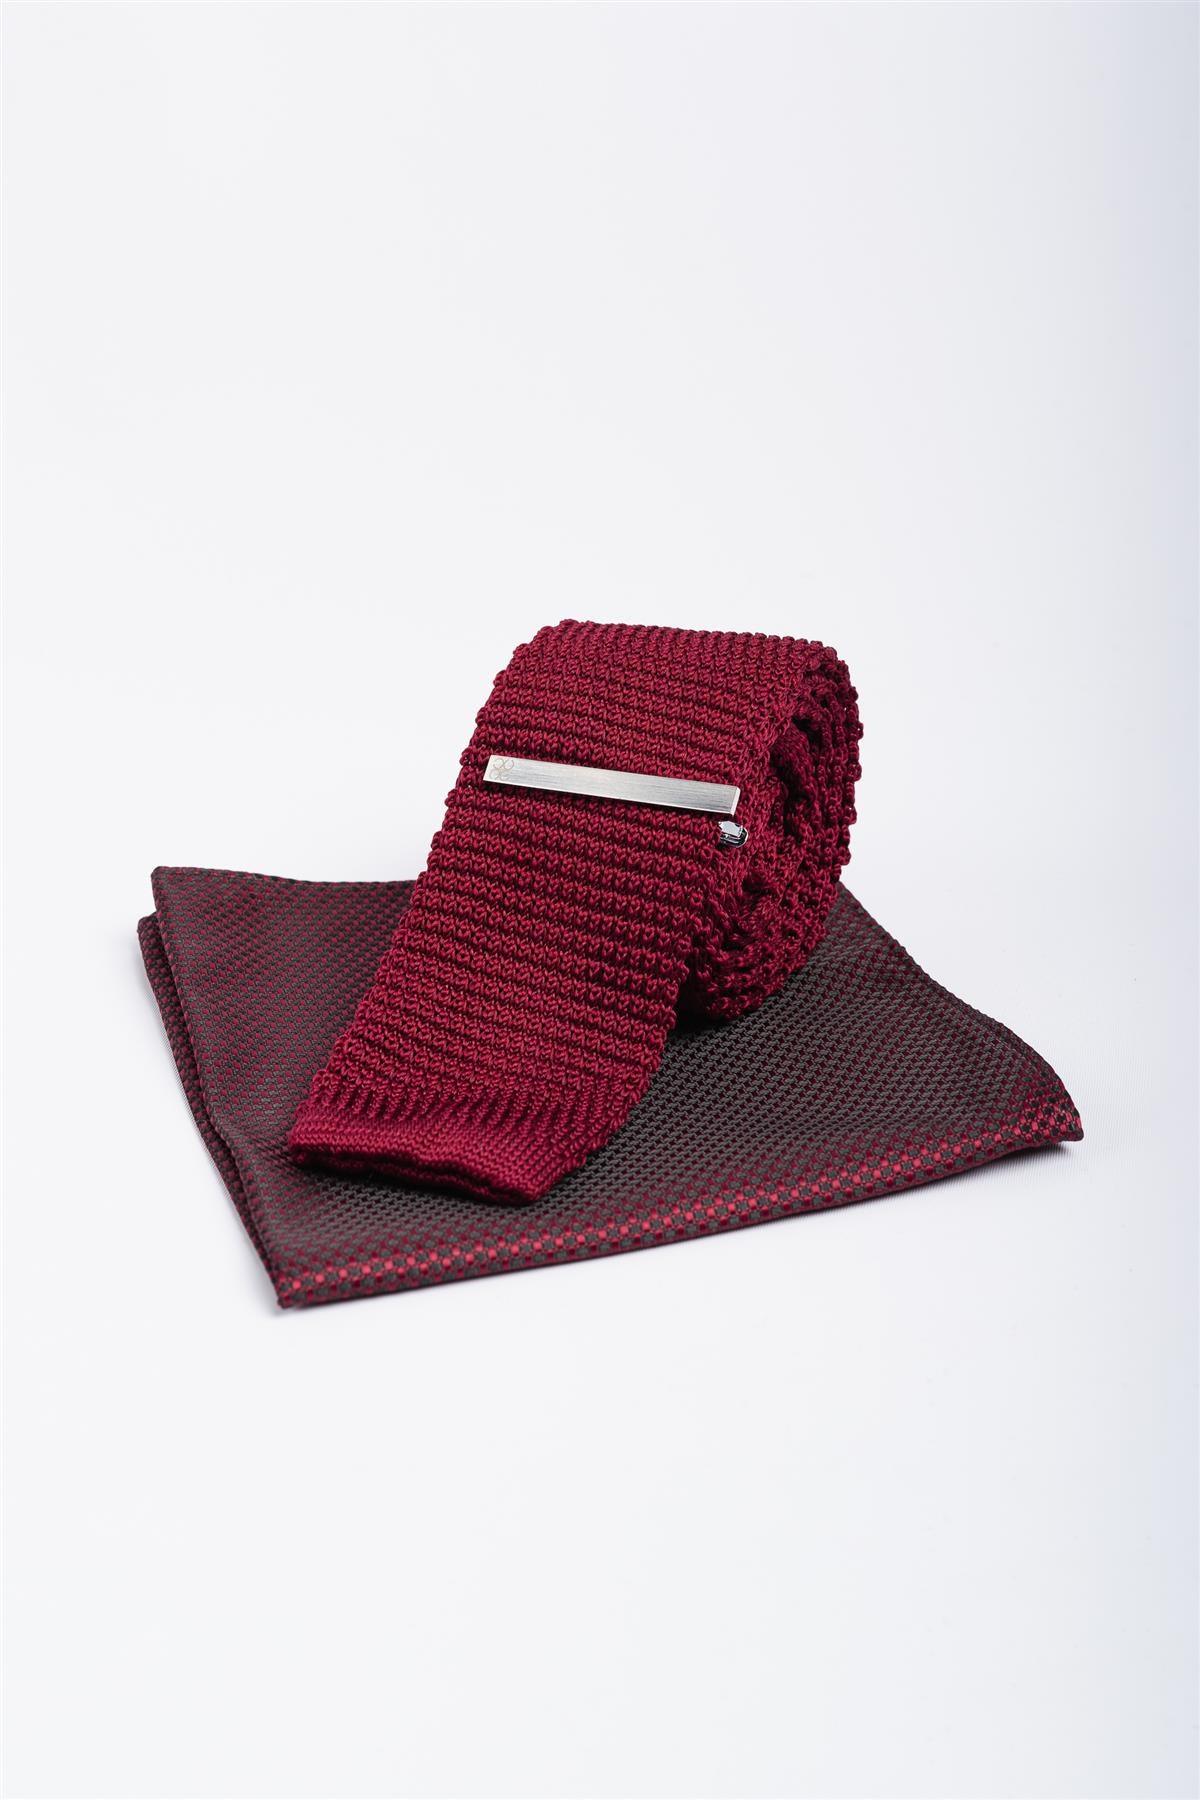 Knitted wine tie set